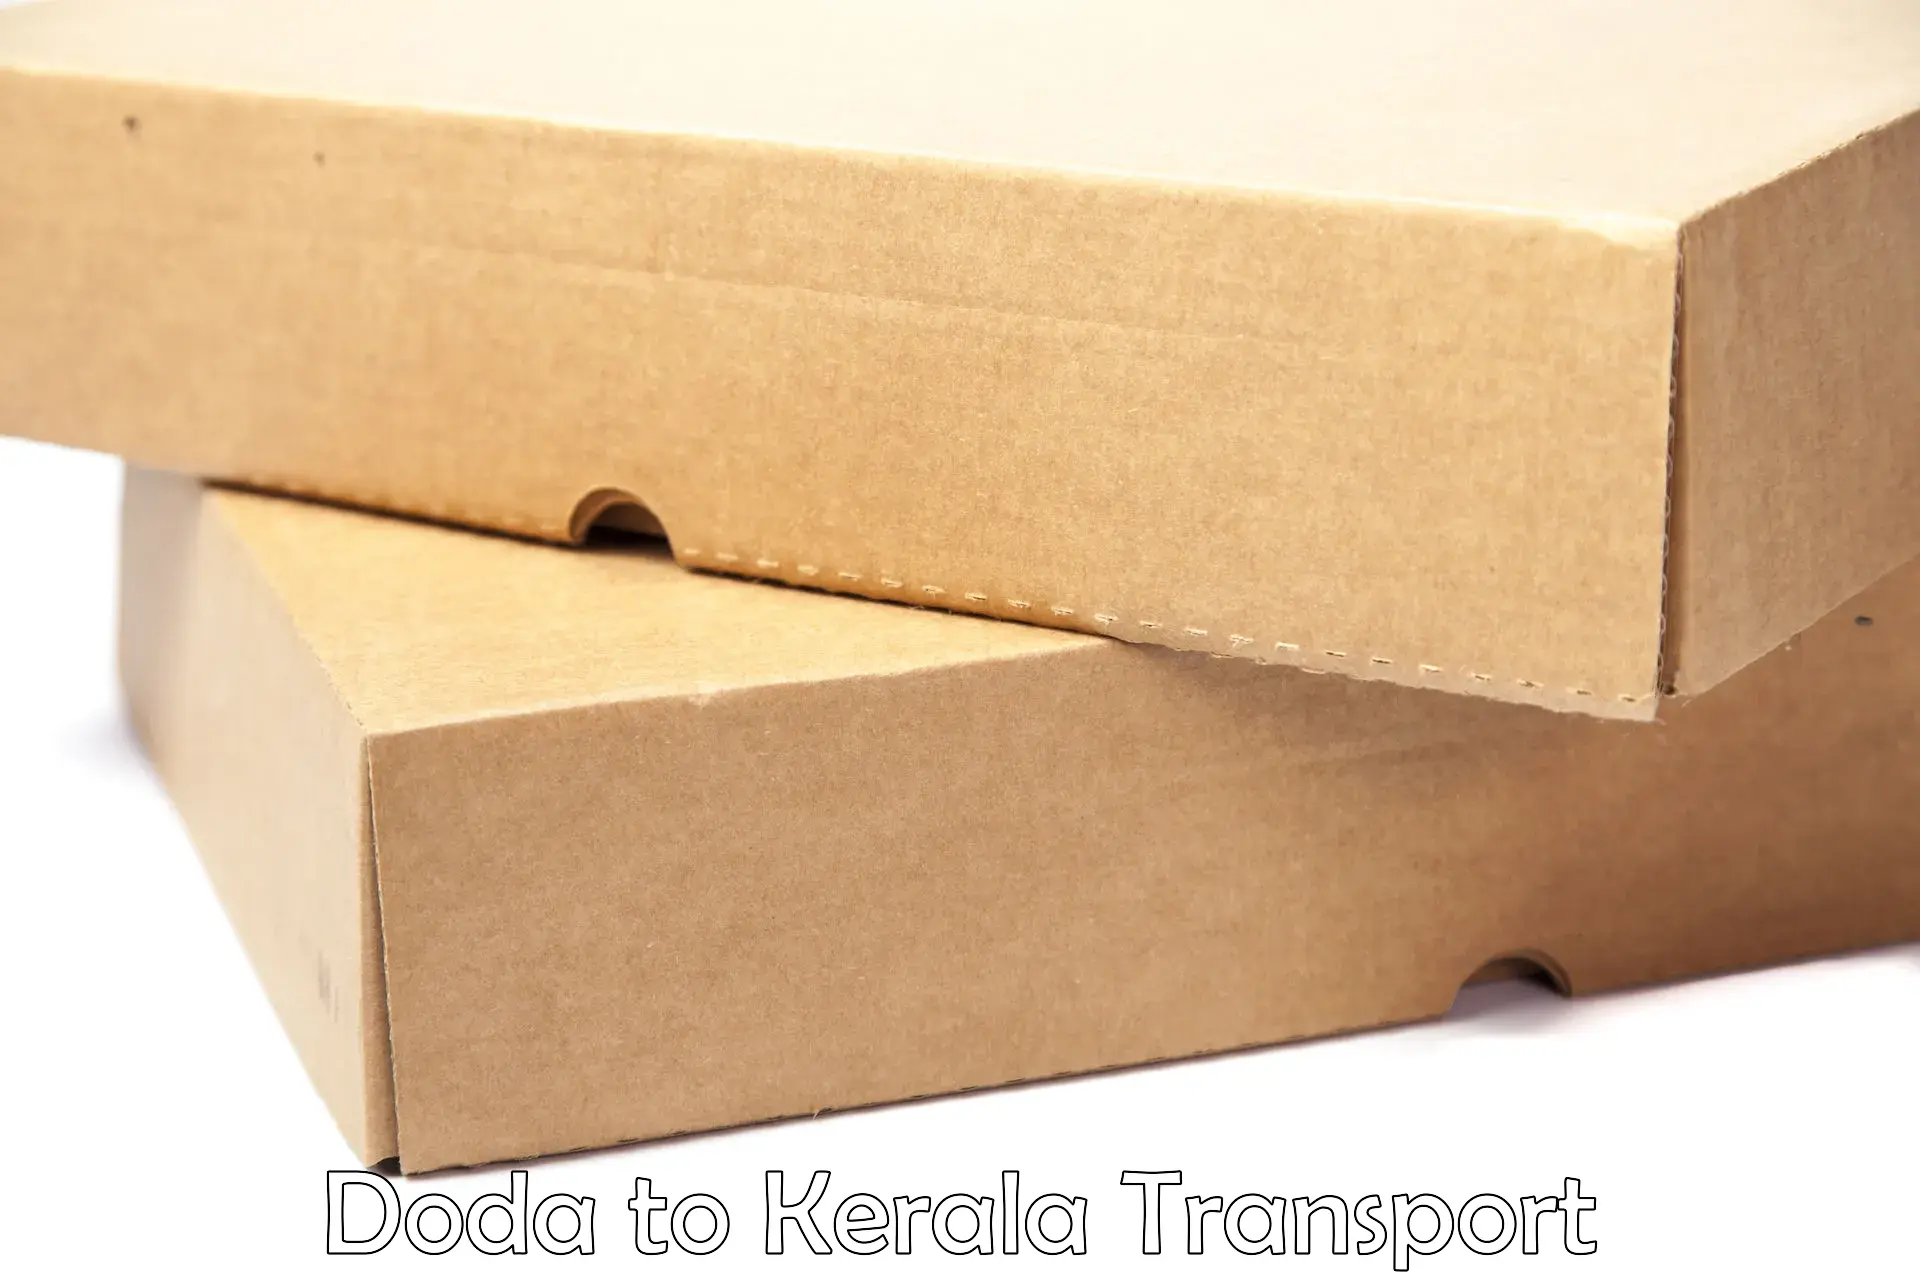 All India transport service Doda to Kalanjoor